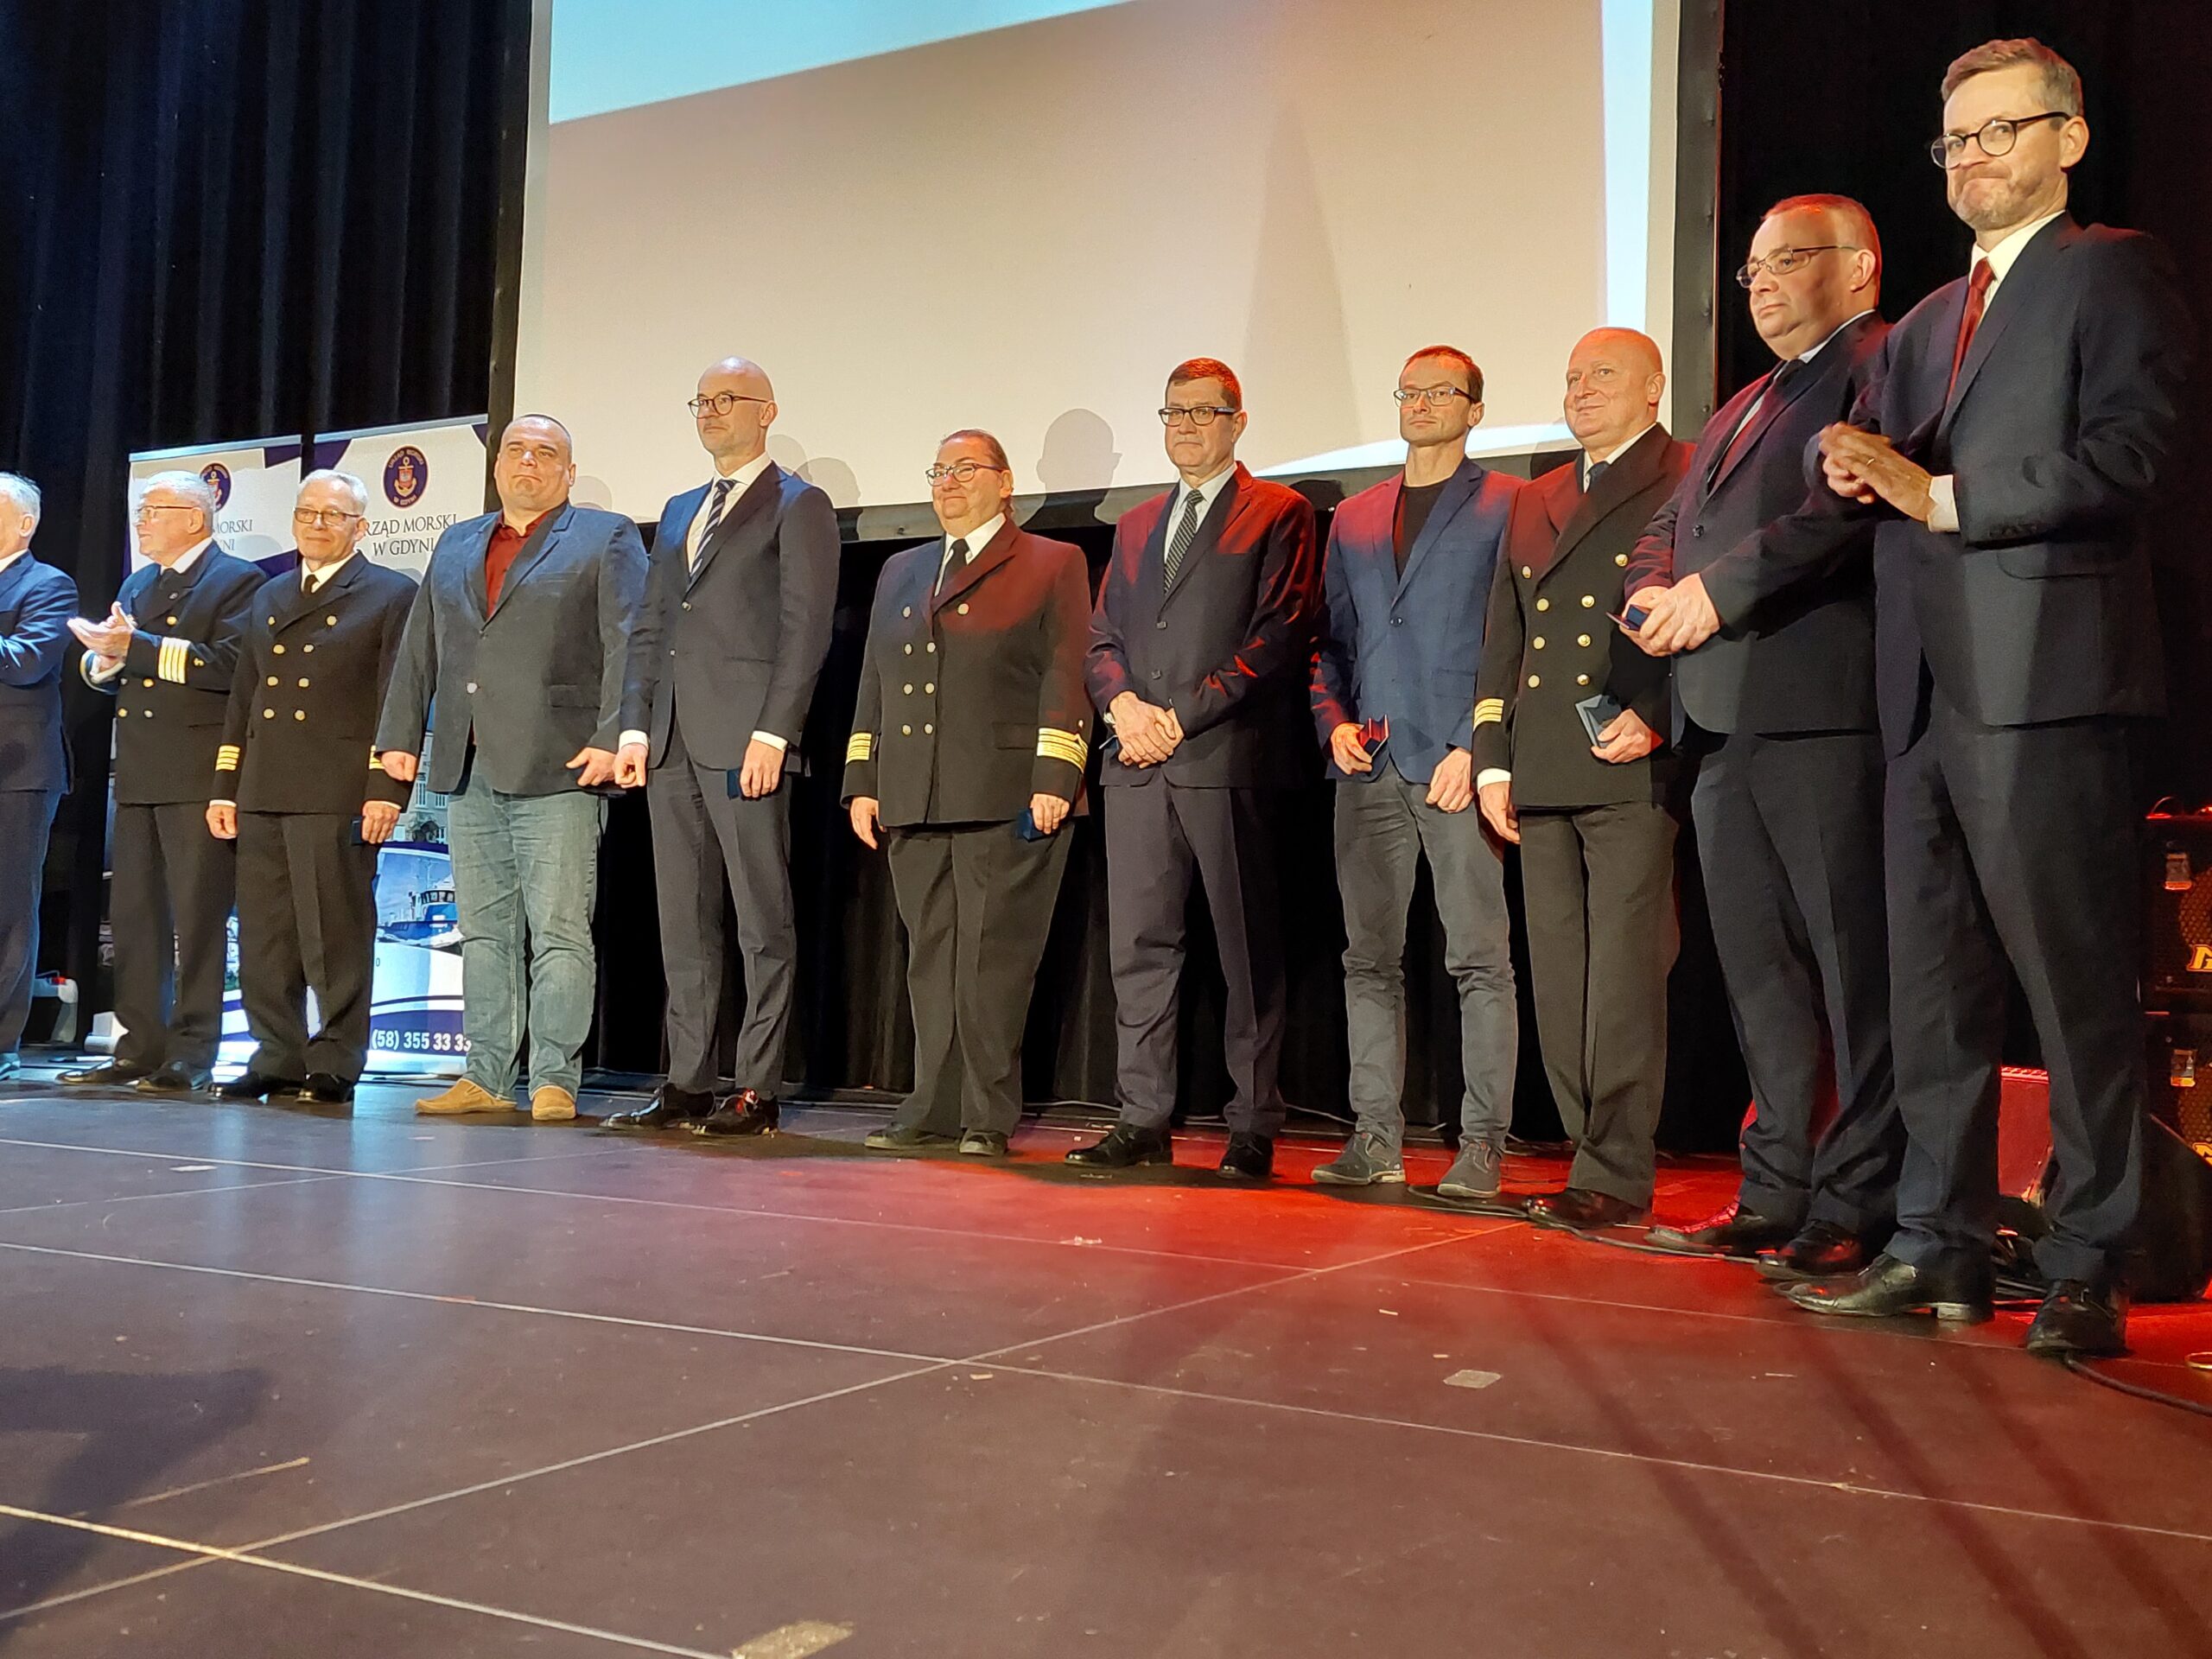 Medale dla Pracowników Urzędu Morskiego w Gdyni 